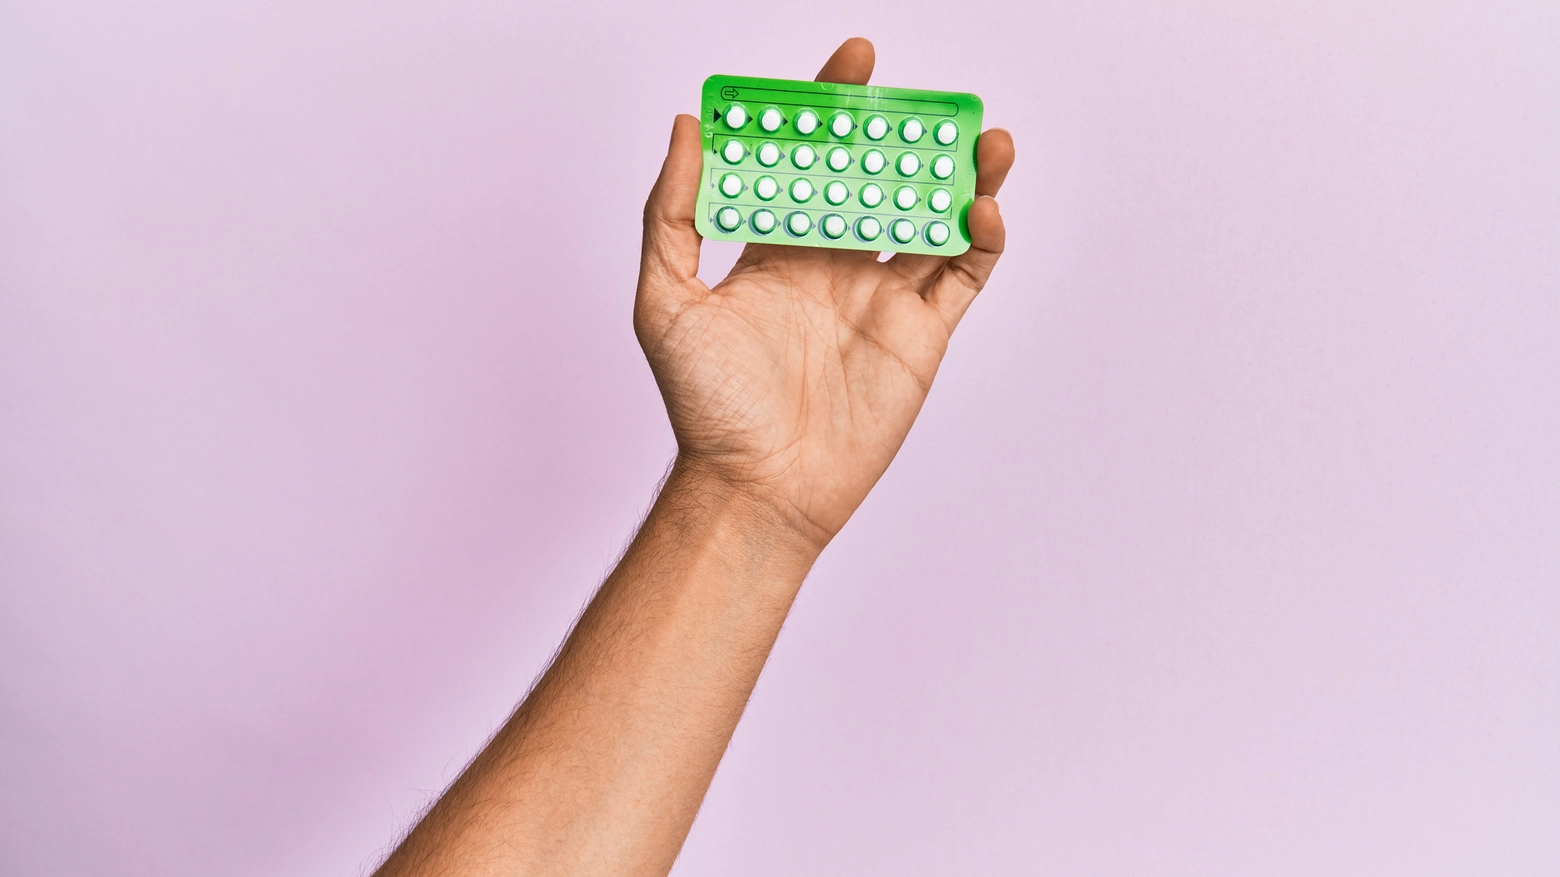 Pillola anticoncezionale gratuita: è polemica